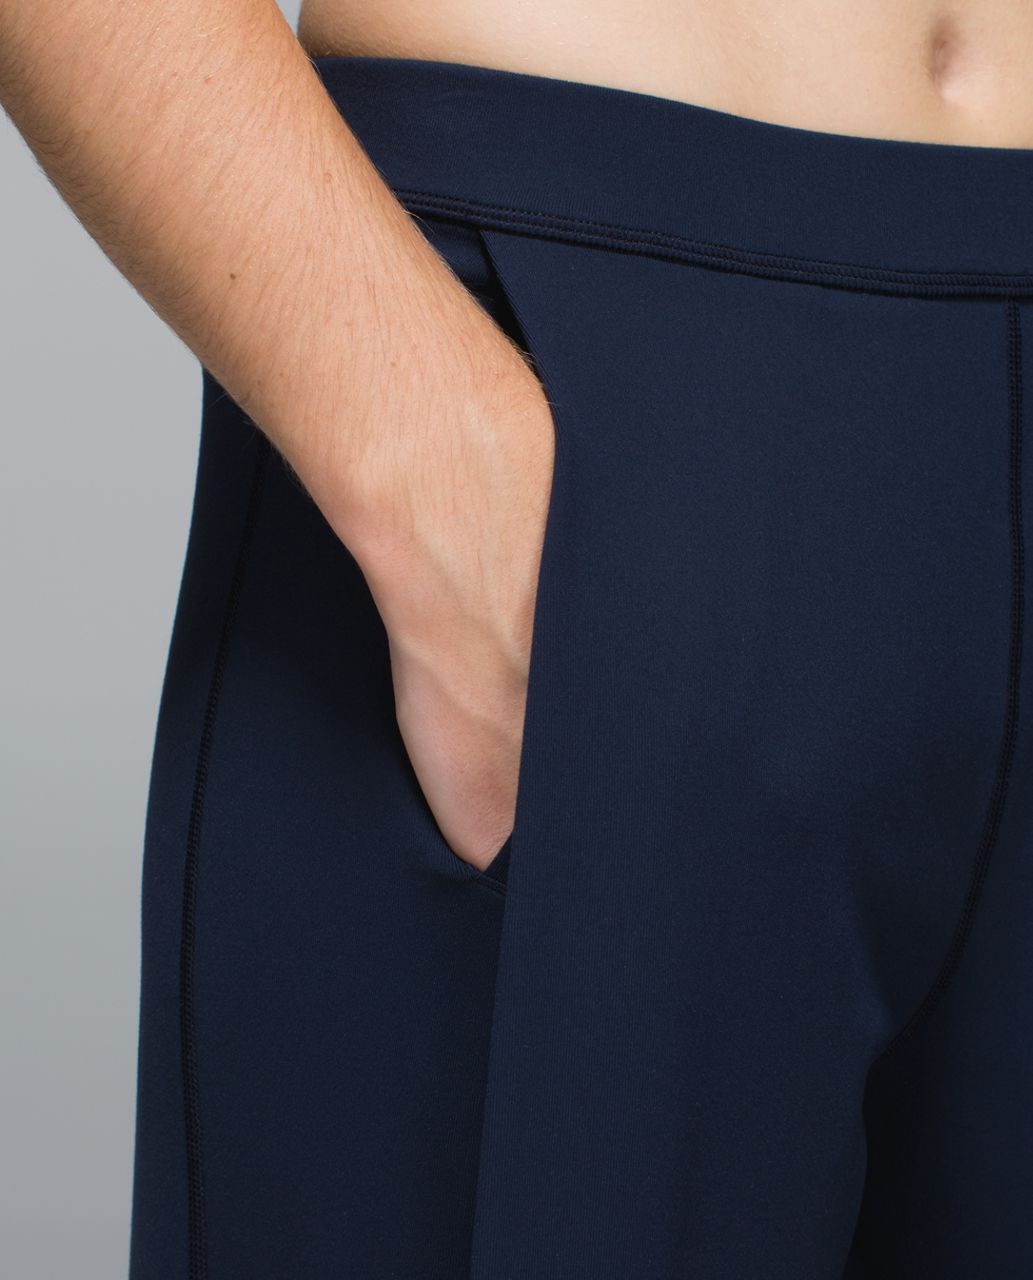 Lululemon Forward Fold Trouser *Full-On Luon - Inkwell